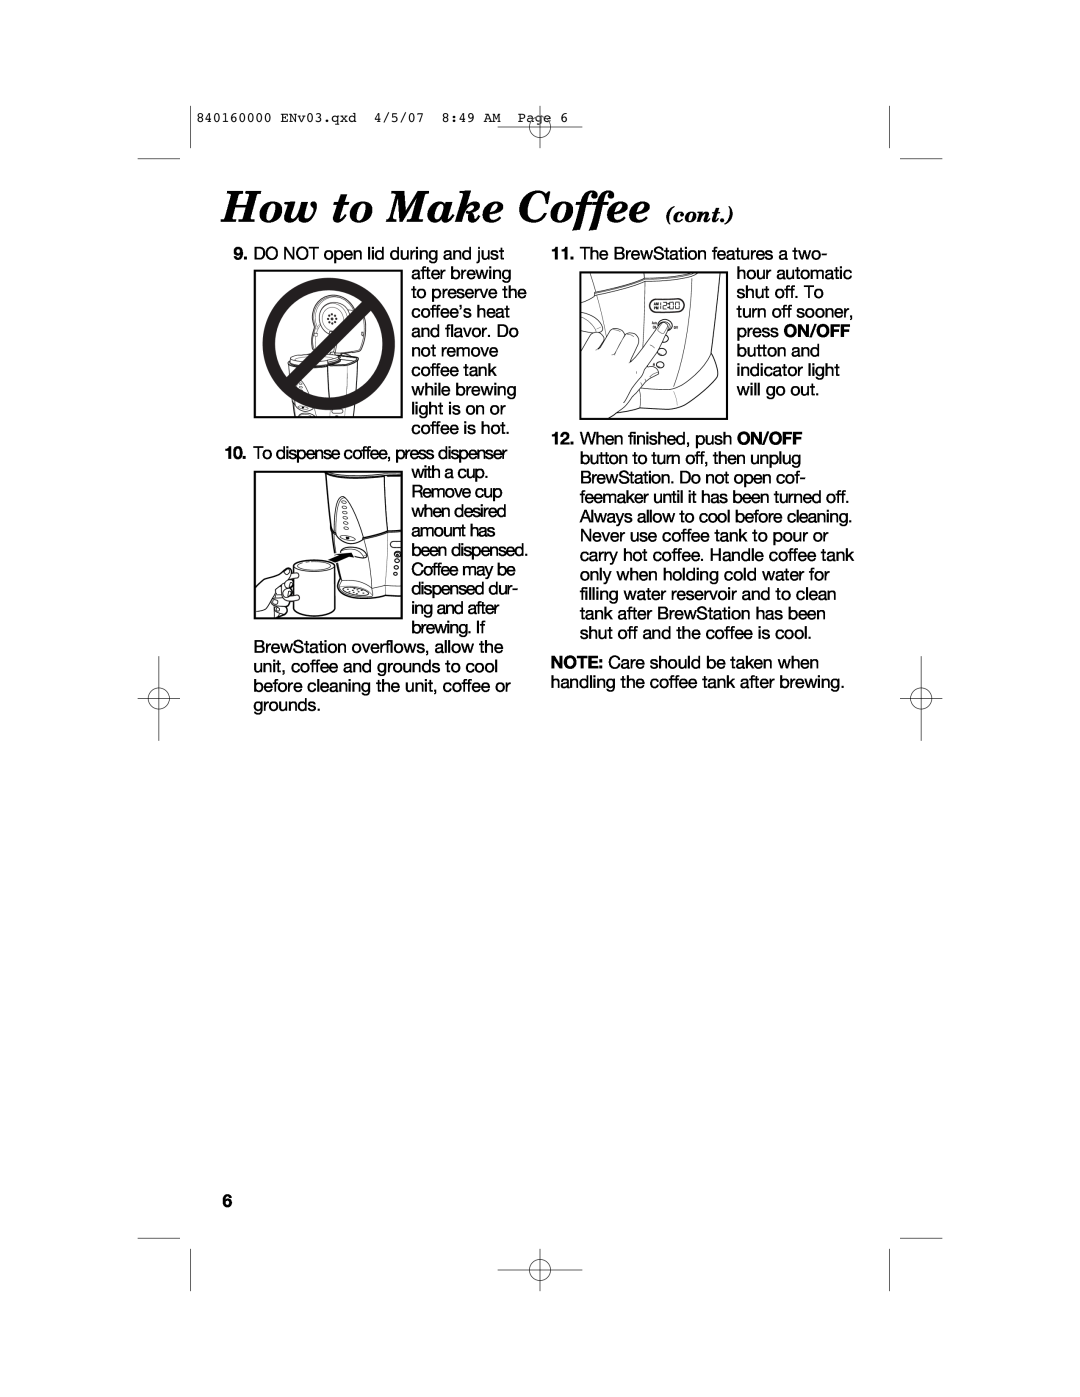 Hamilton Beach D43012B manual How to Make Coffee cont 